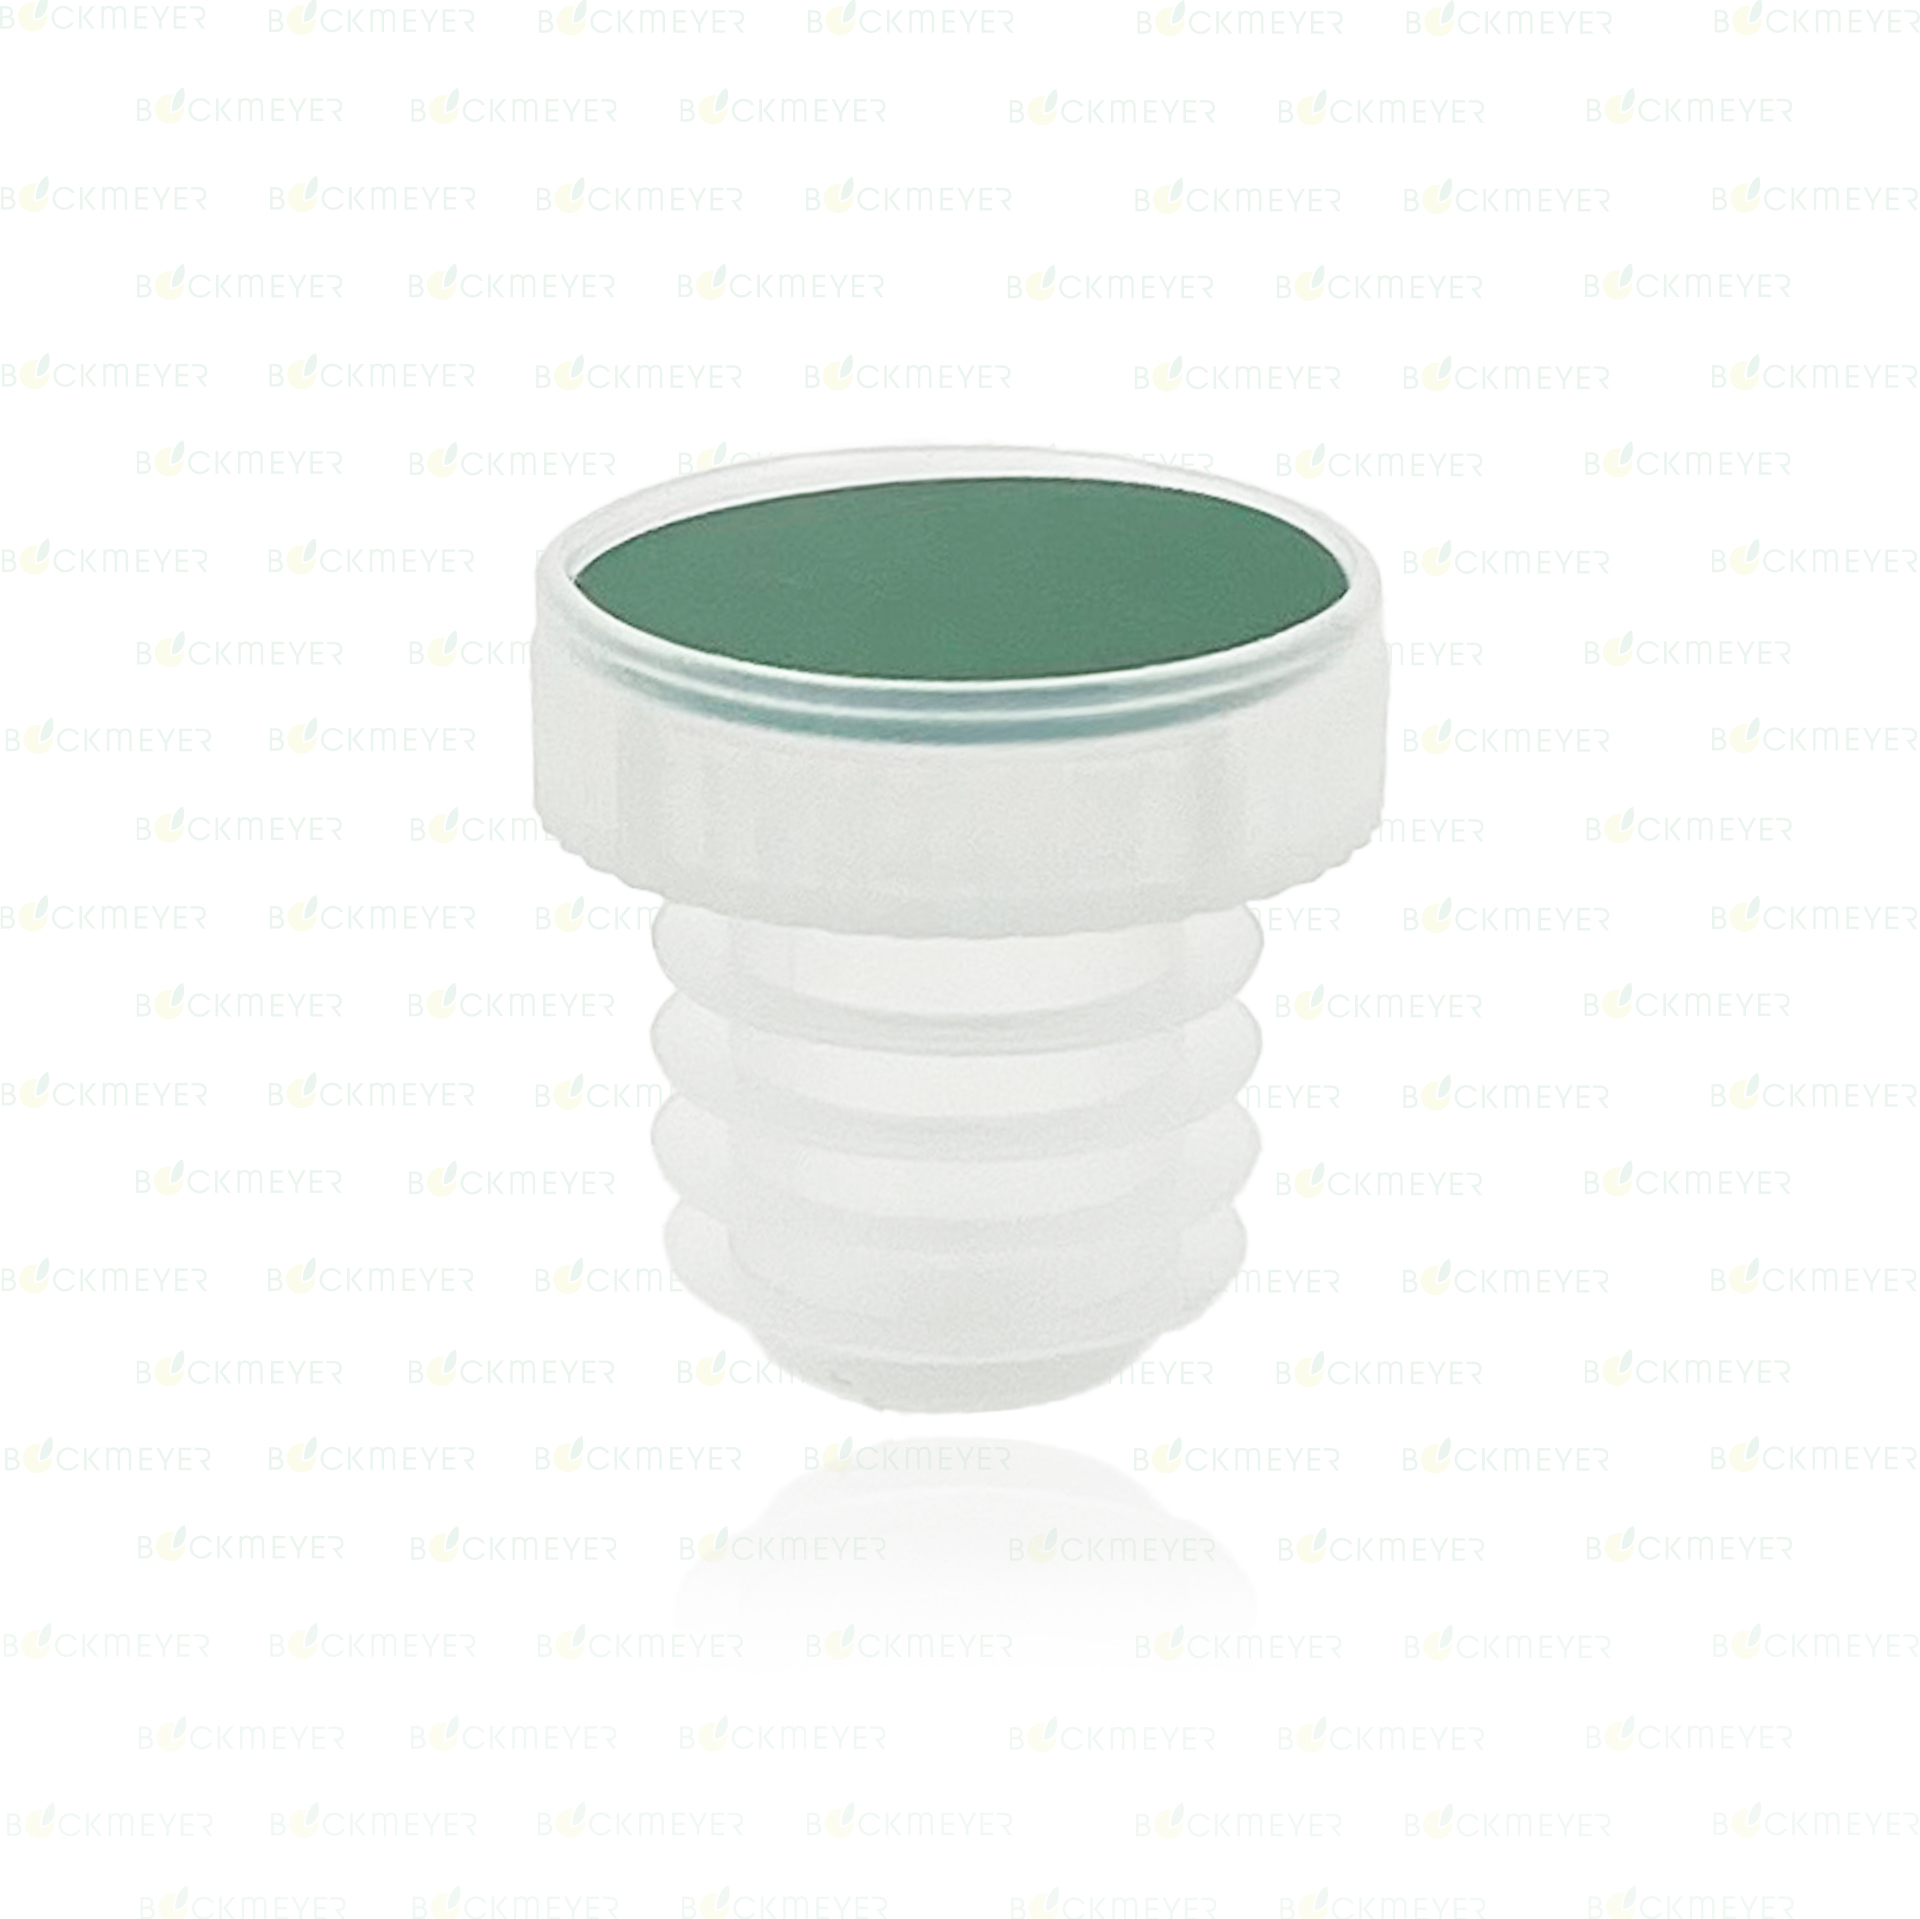 Lamellenstopfen grün Kunststoff, Durchmesser 19 mm